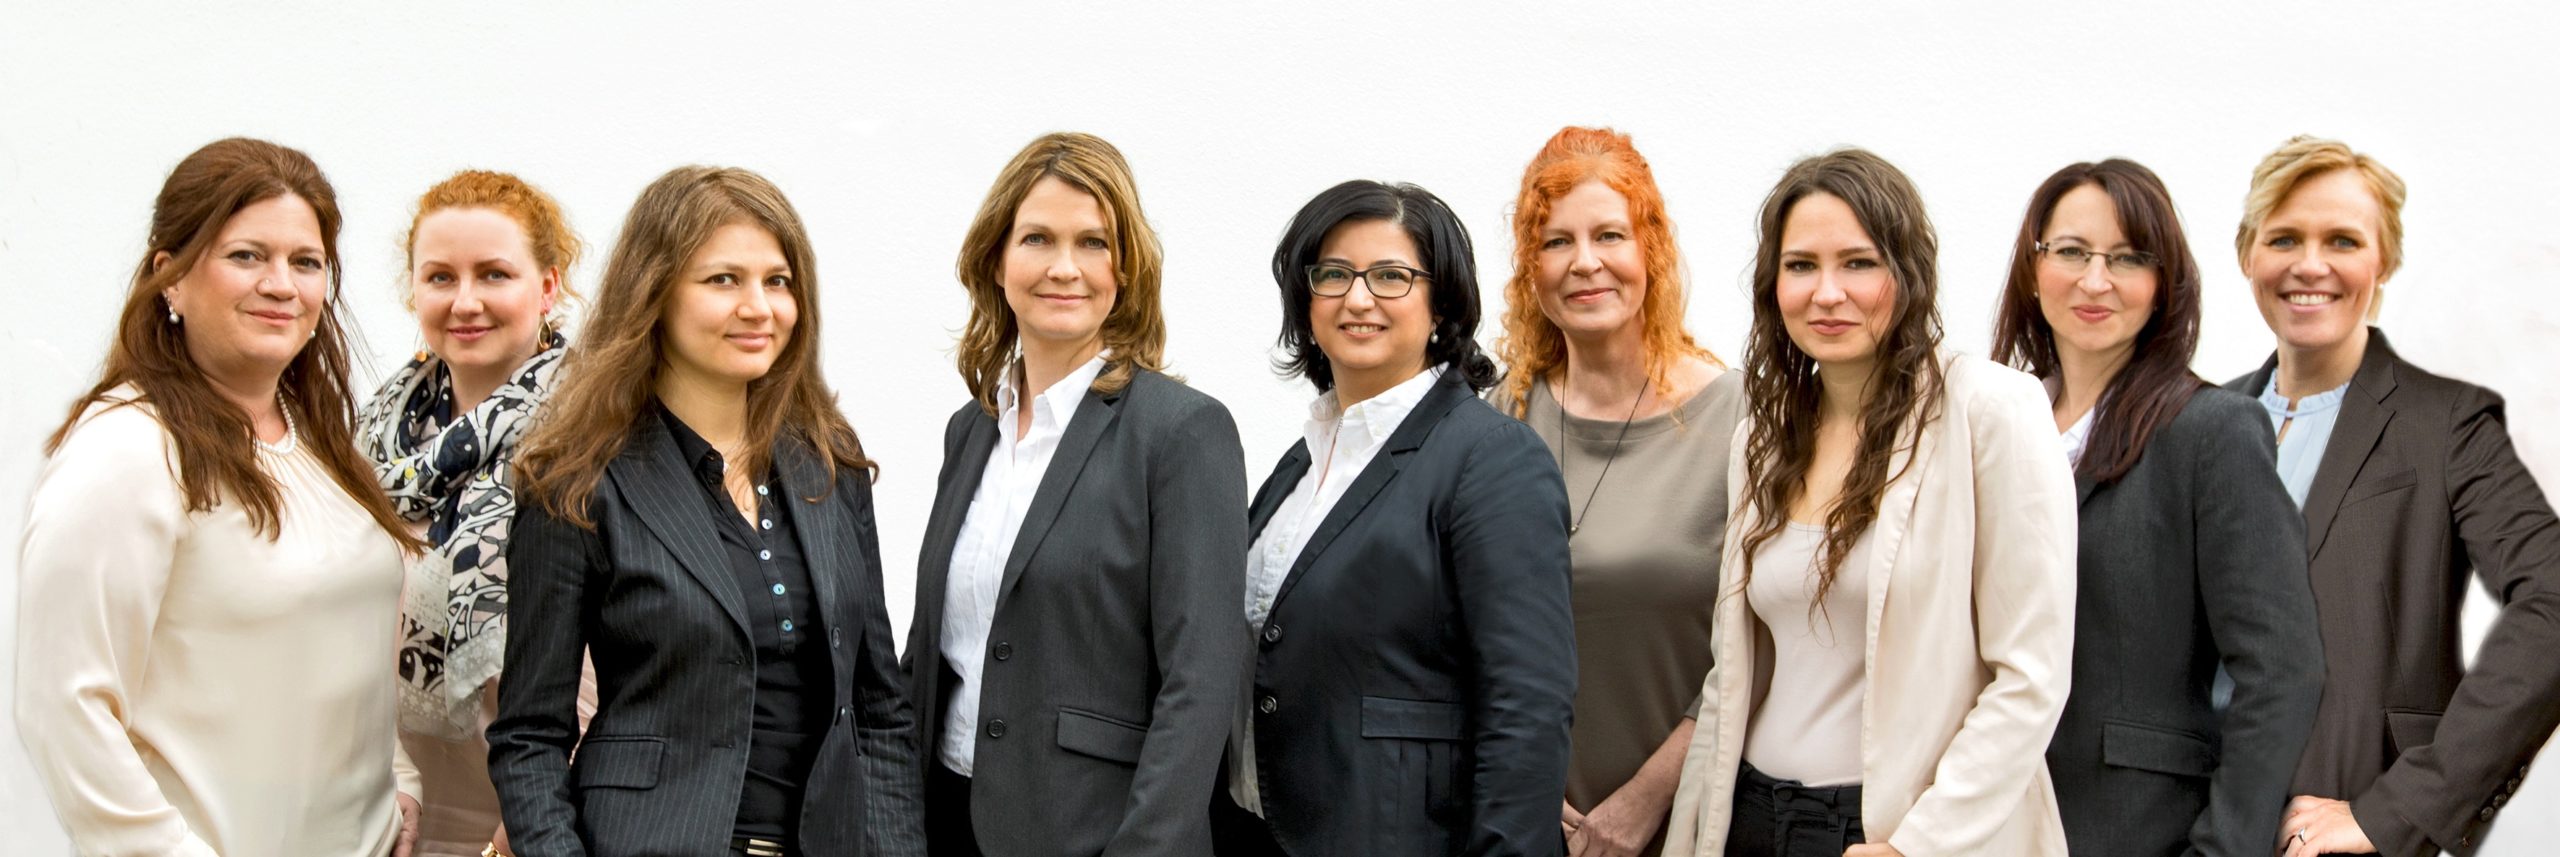 Gruppenbild der Anwälte und des Teams bei Bösch & Kalagi